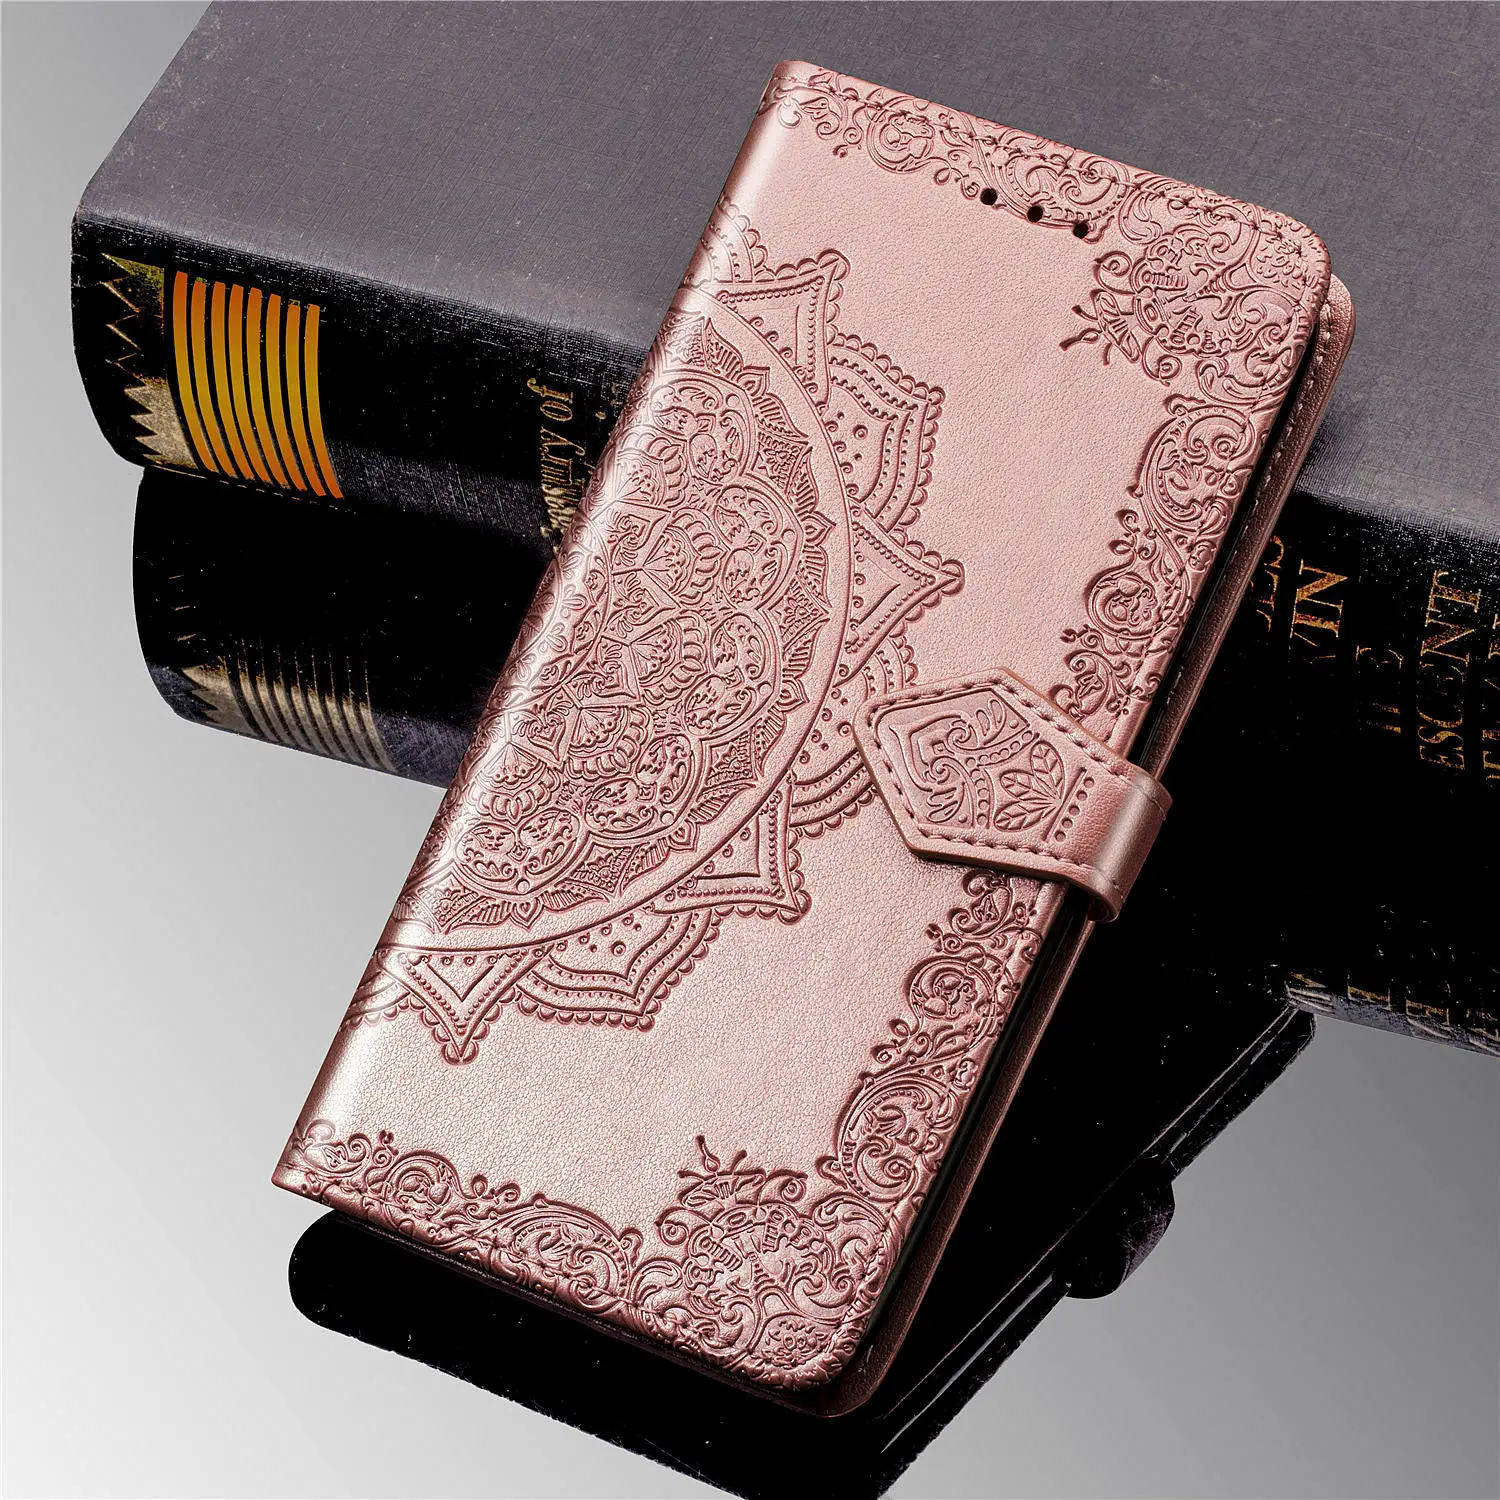 Чехол-бумажник Honor 8 S чехол для huawei Honor 8 S Honor8S KSE-LX9 Honor 8 S Чехол-книжка для huawei Y5 Y52019